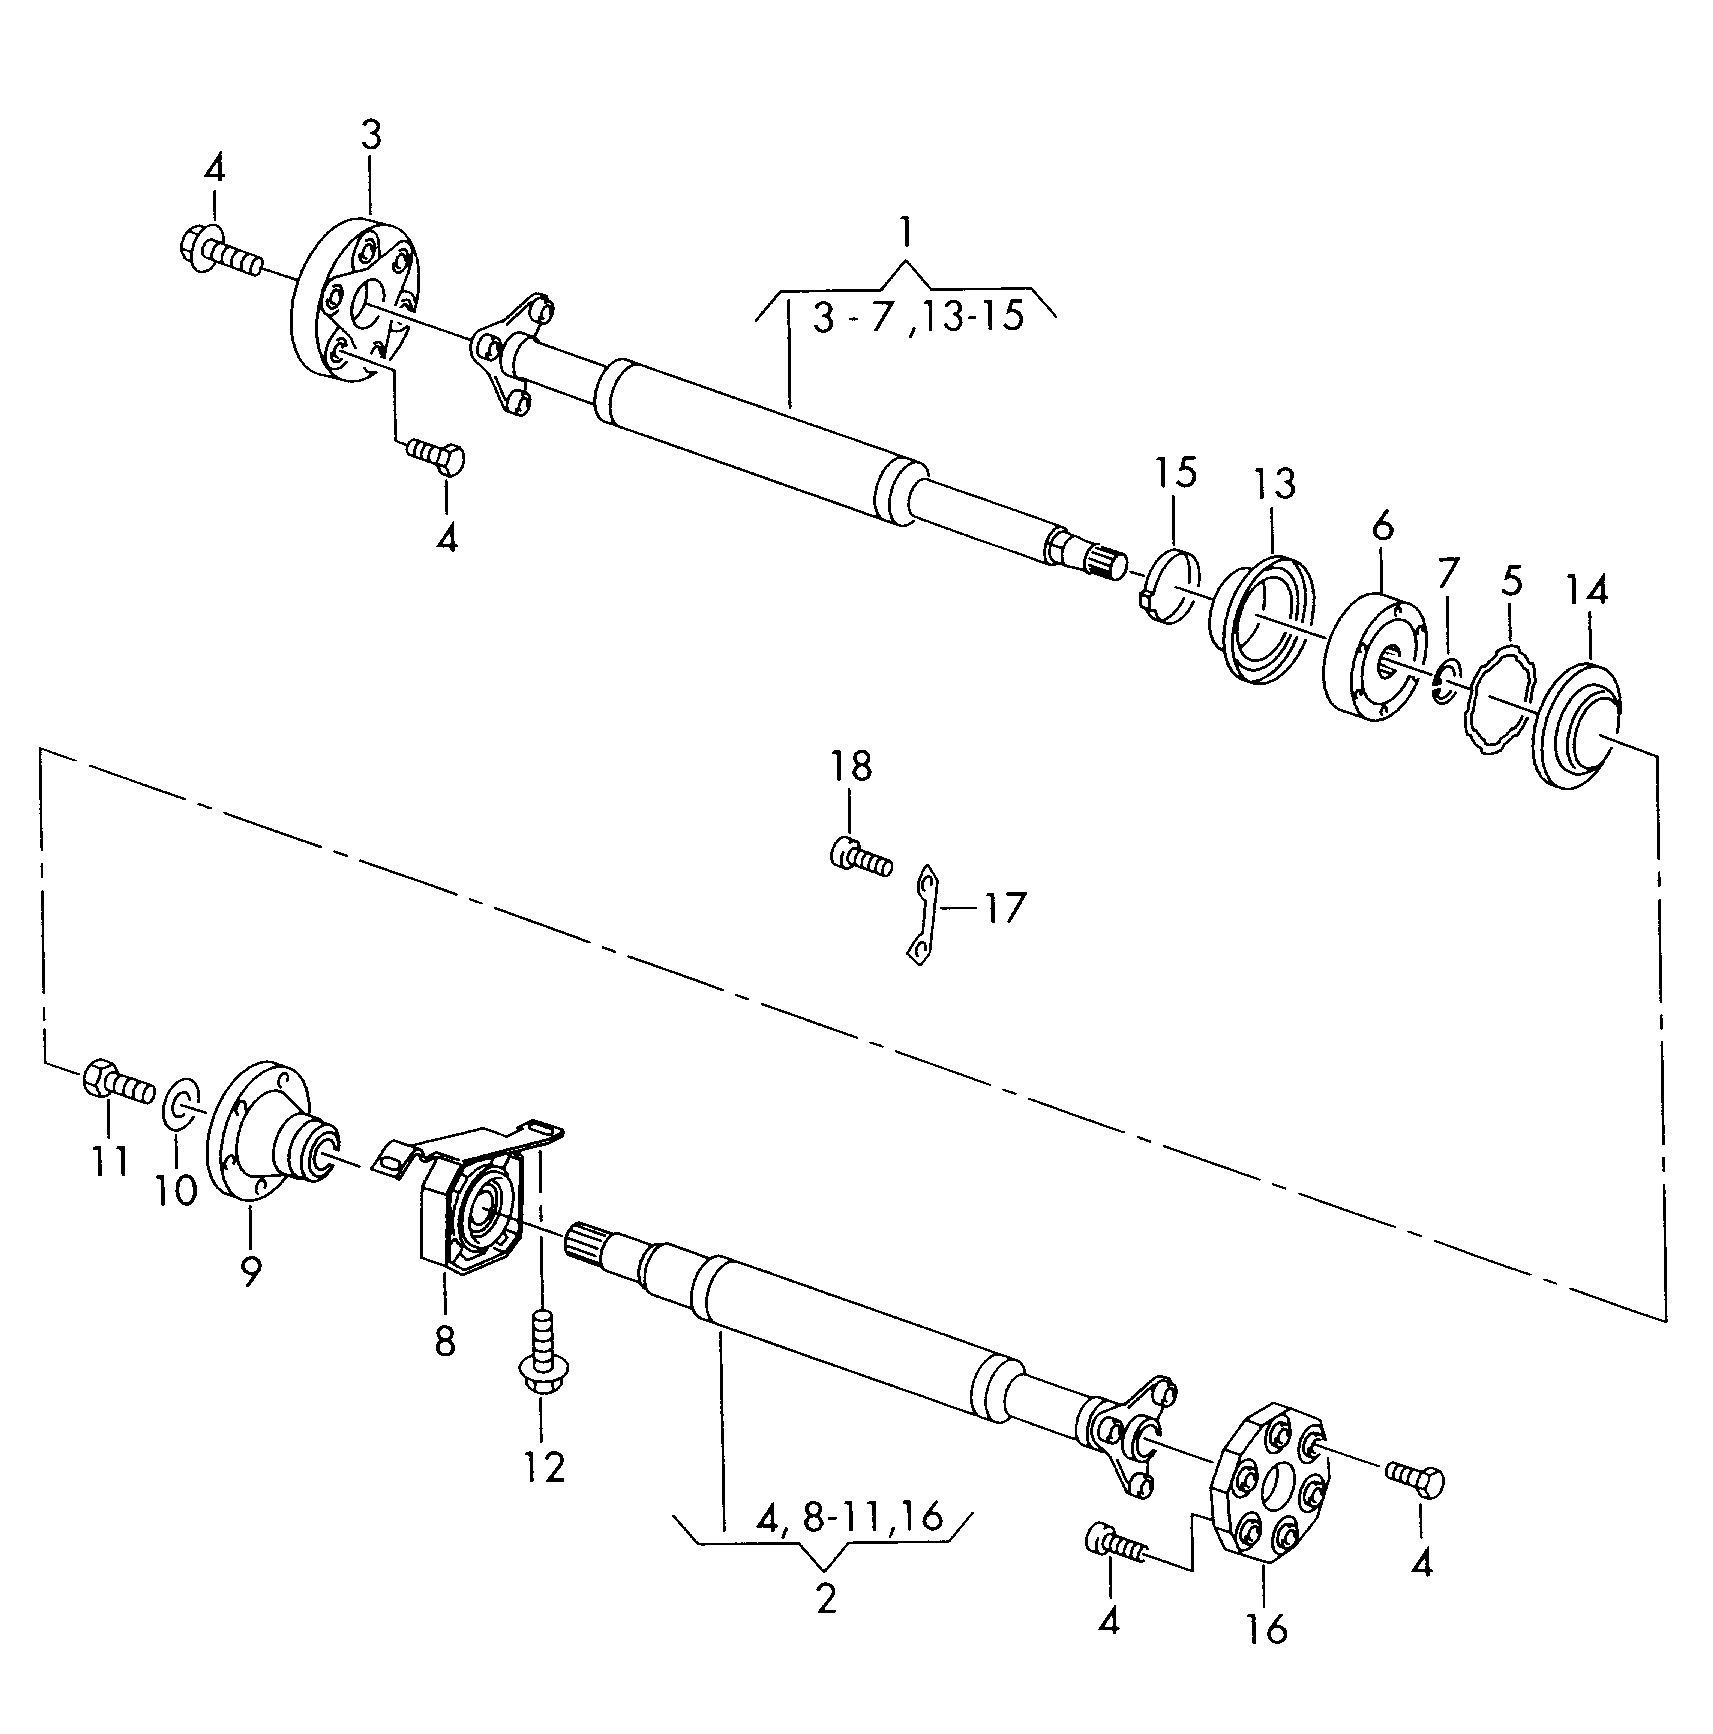 hridel spojovaci 2-dilny s
vnitrnim loziskem - Sharan/syncro/4Motion(SHA)  